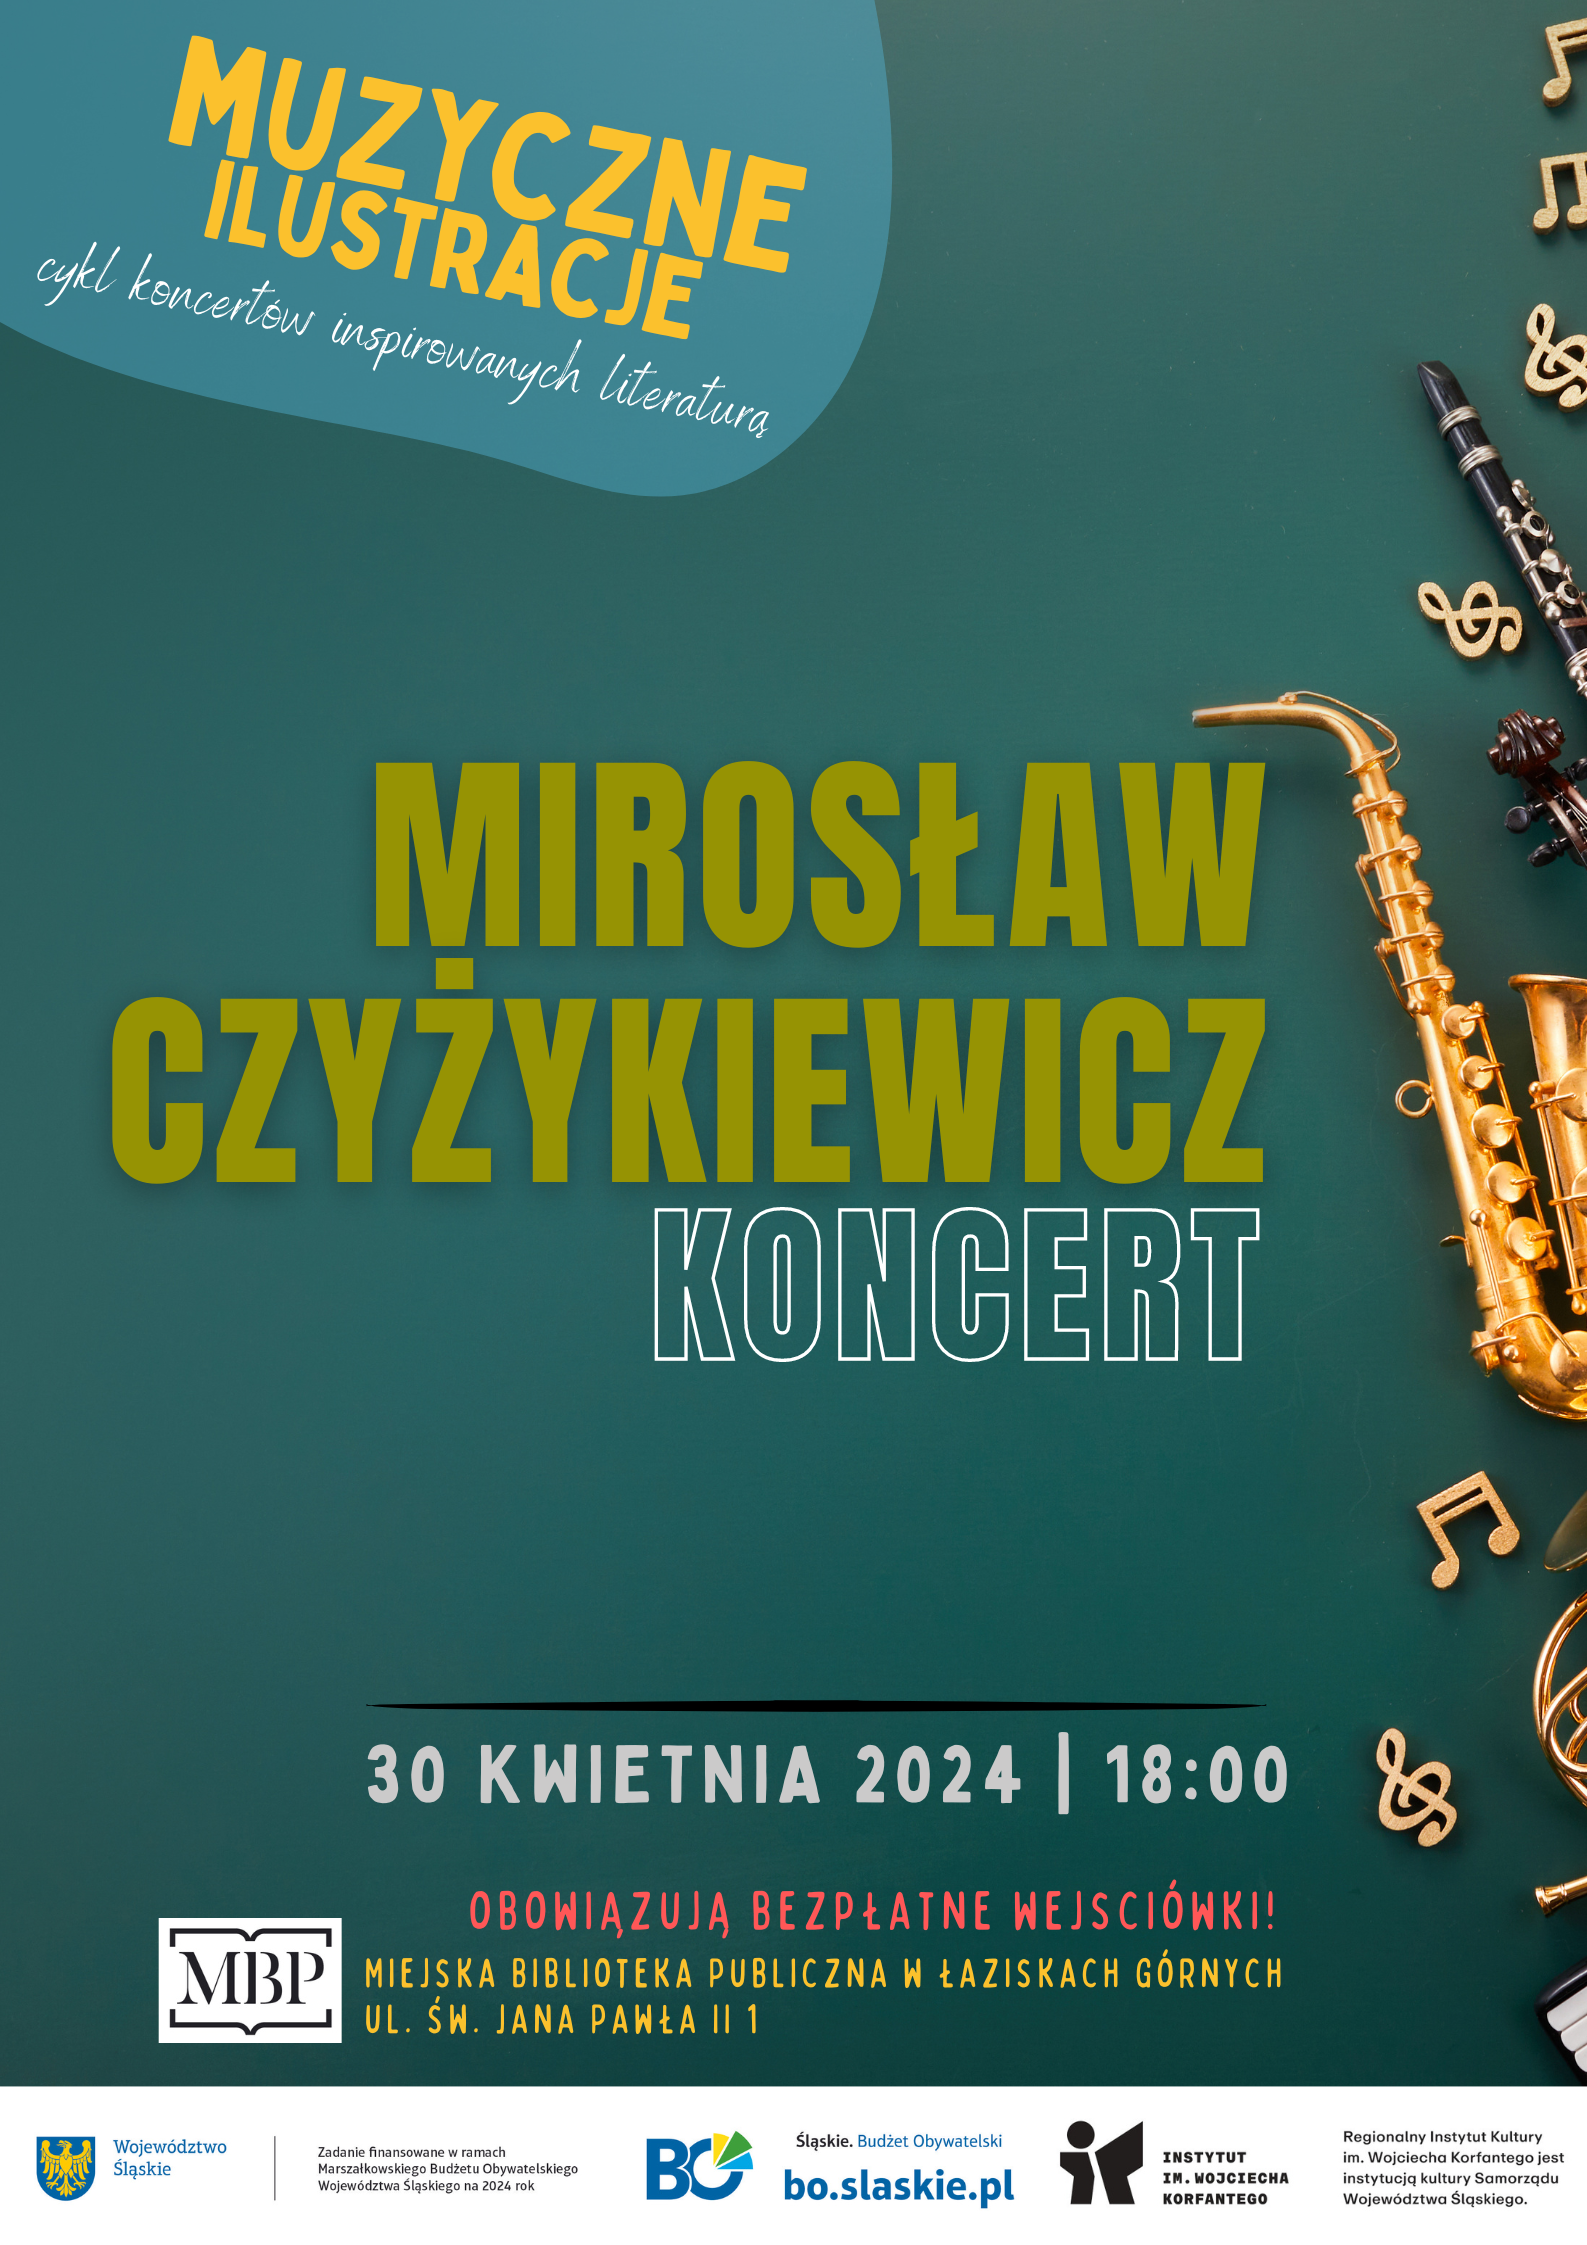 Plakat wydarzenia Muzyczne ilustracje - koncert Mirosława Czyżykiewicza